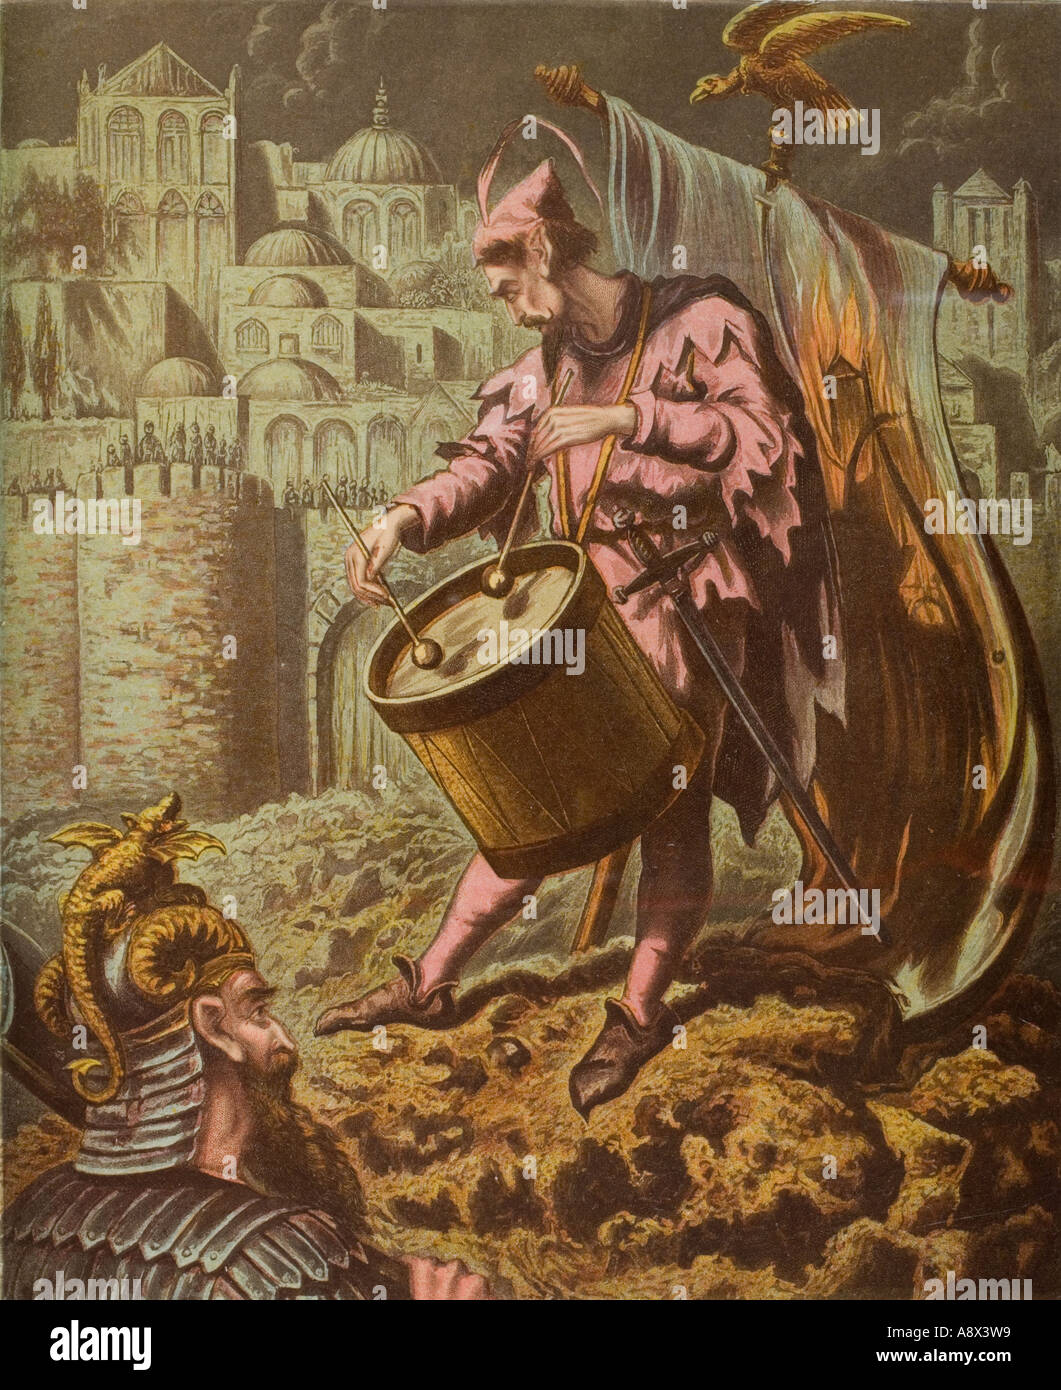 Diabolus Schlagzeuger vor den Mauern von Mansoul. Aus dem Buch The Holy War von John Bunyan. Ende des 19. Jahrhunderts Ausgabe Stockfoto